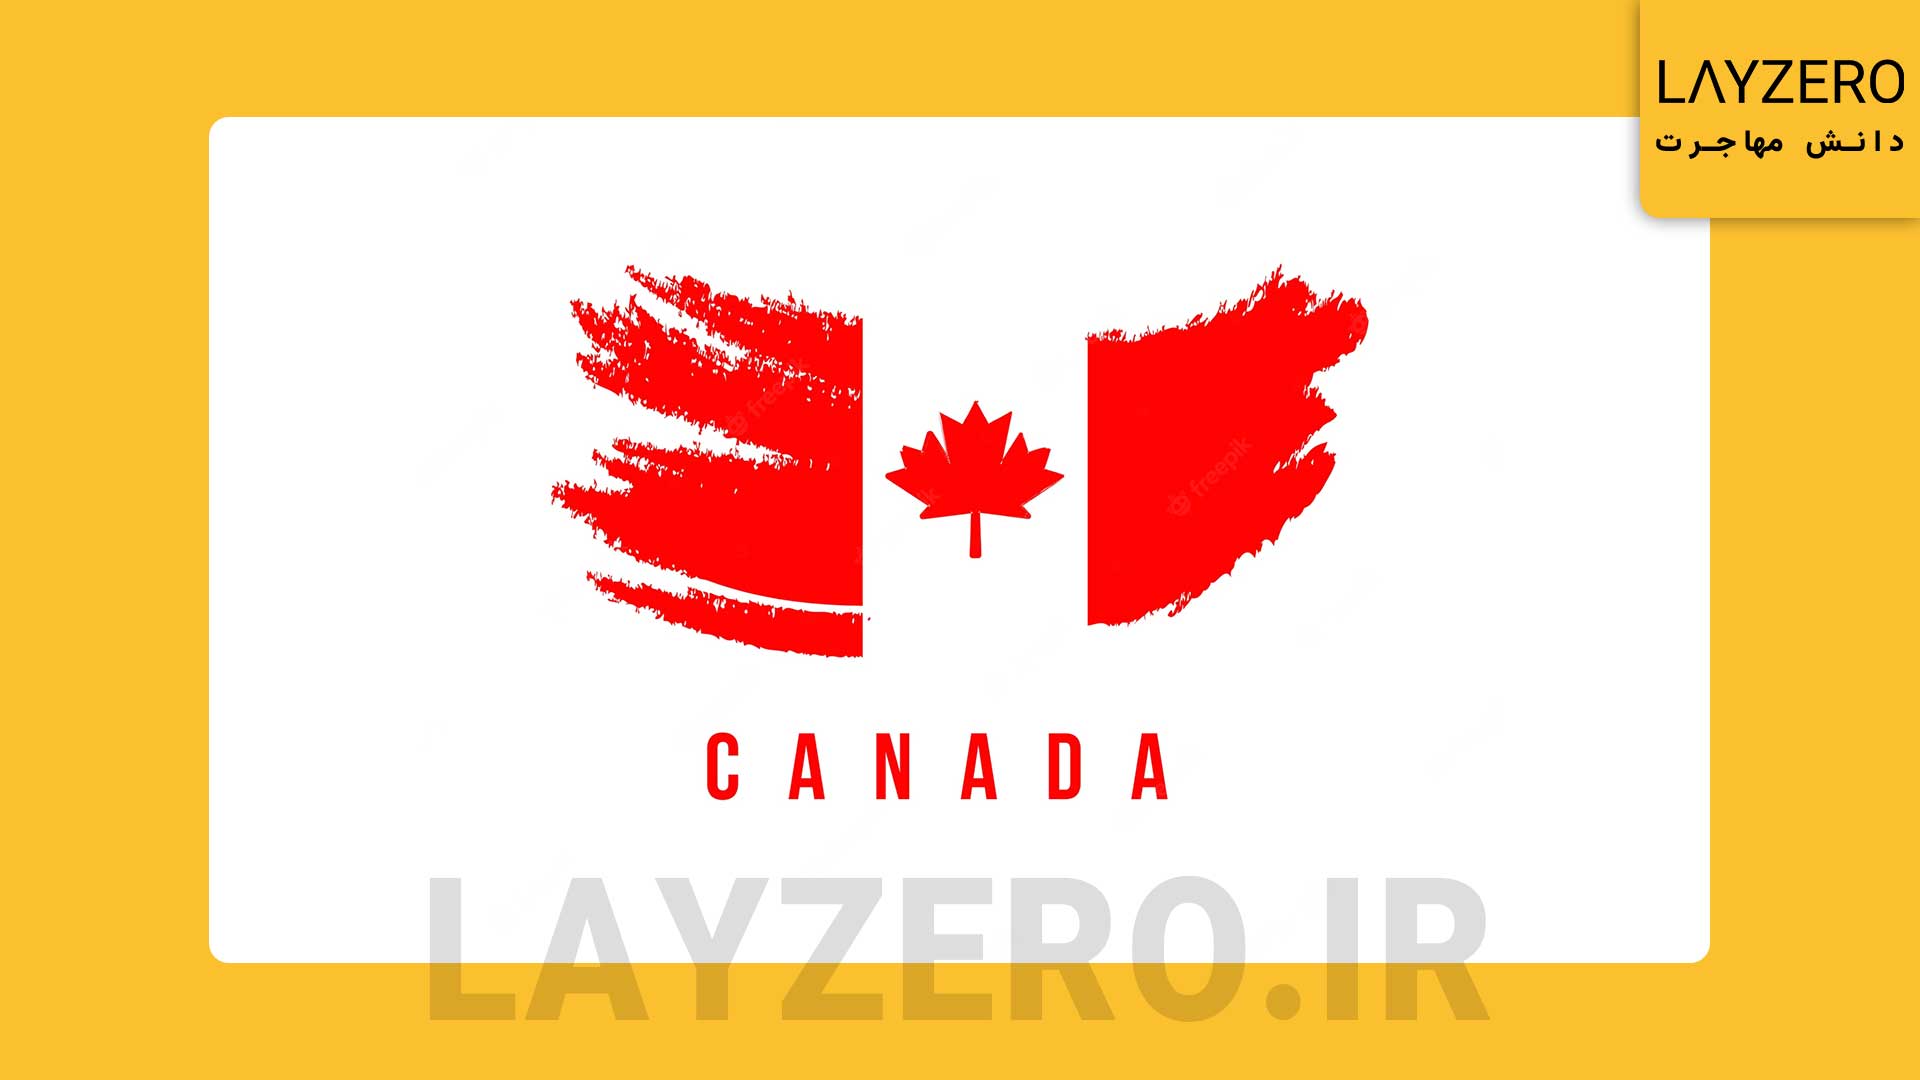 لاتاری کانادا و ثبت نام لاتاری کانادا دروغ است; باور نکنید سایت ثبت نام لاتاری کانادا، شرایط ثبت نام لاتاری کانادا و تاریخ شروع و پایان ثبت نام لاتاری کانادا به طور کلی این موضوع دروغ محض است.